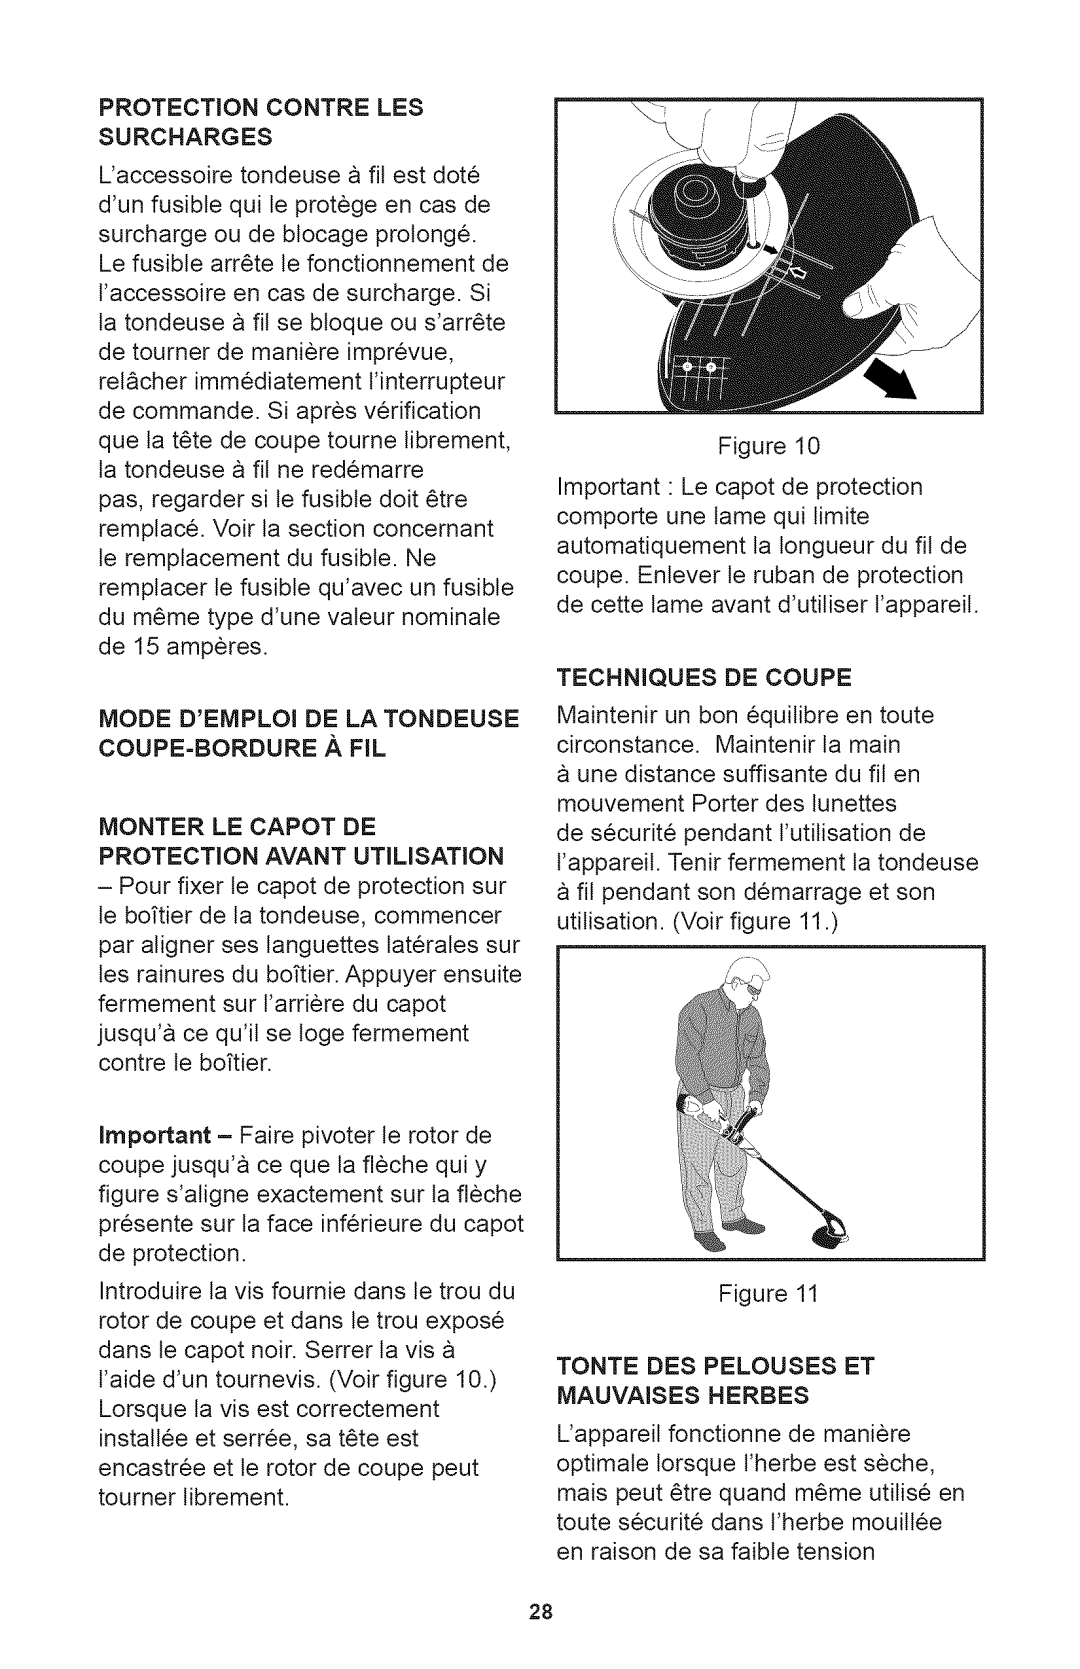 Craftsman 240.74291 Protection Contre Les Surcharges, Monter Le Capot De Protection Avant Utilisation, Techniques De Coupe 